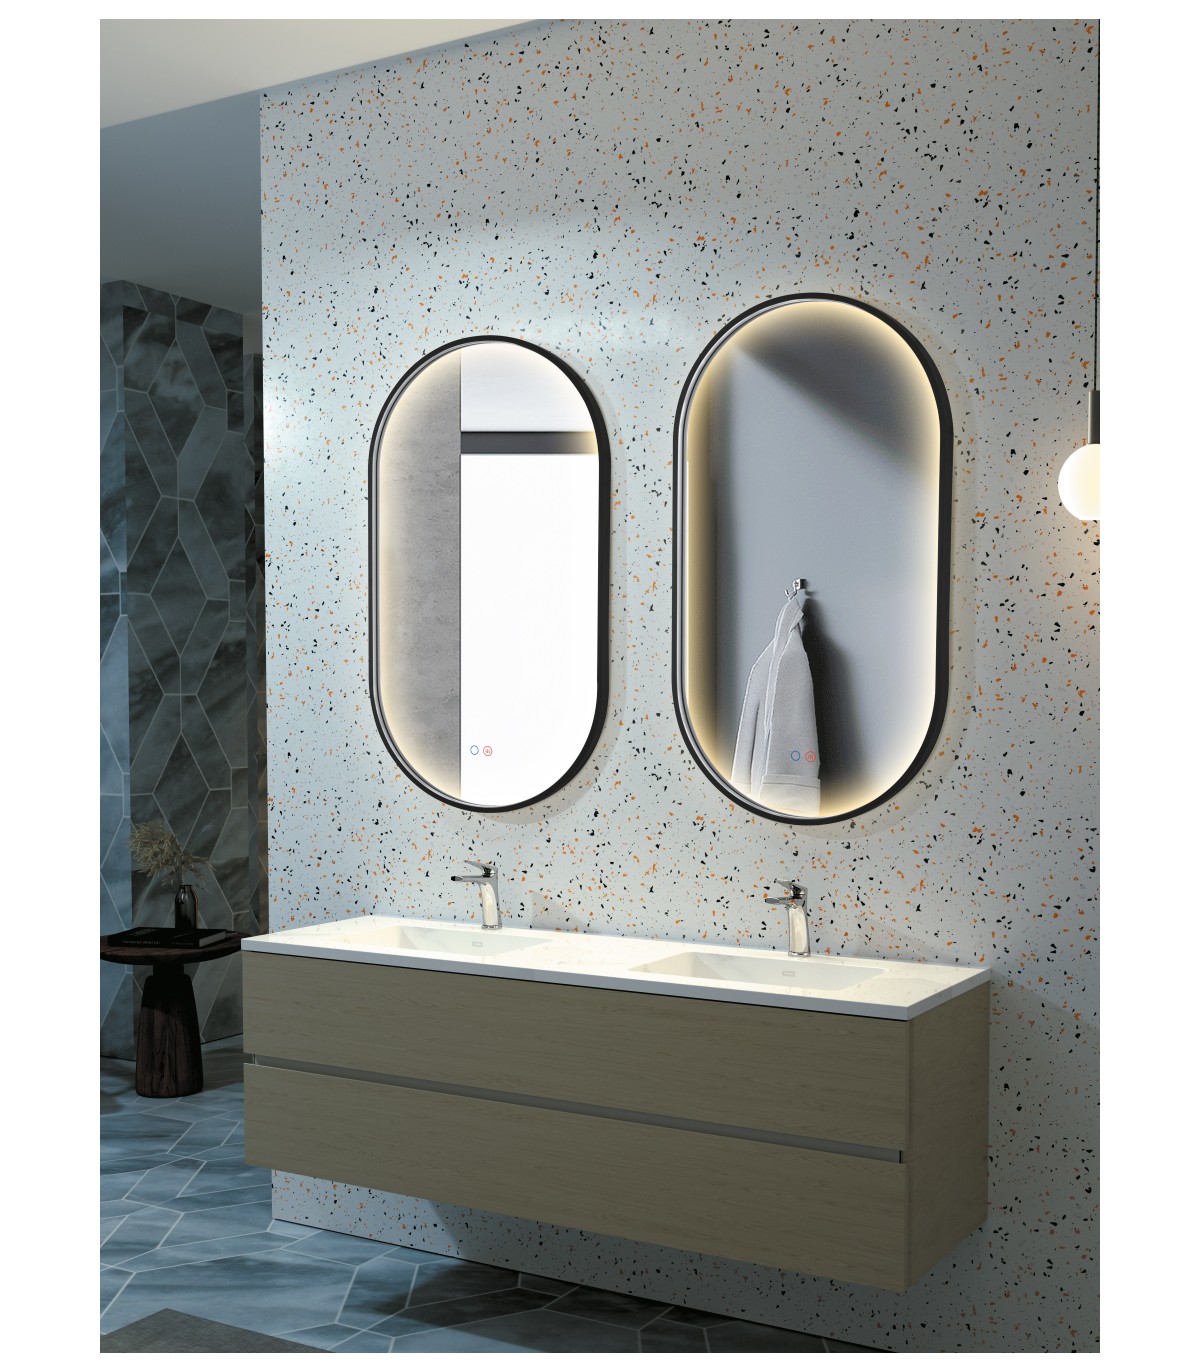 Espejo de baño con cantos romos y luz led incorporada